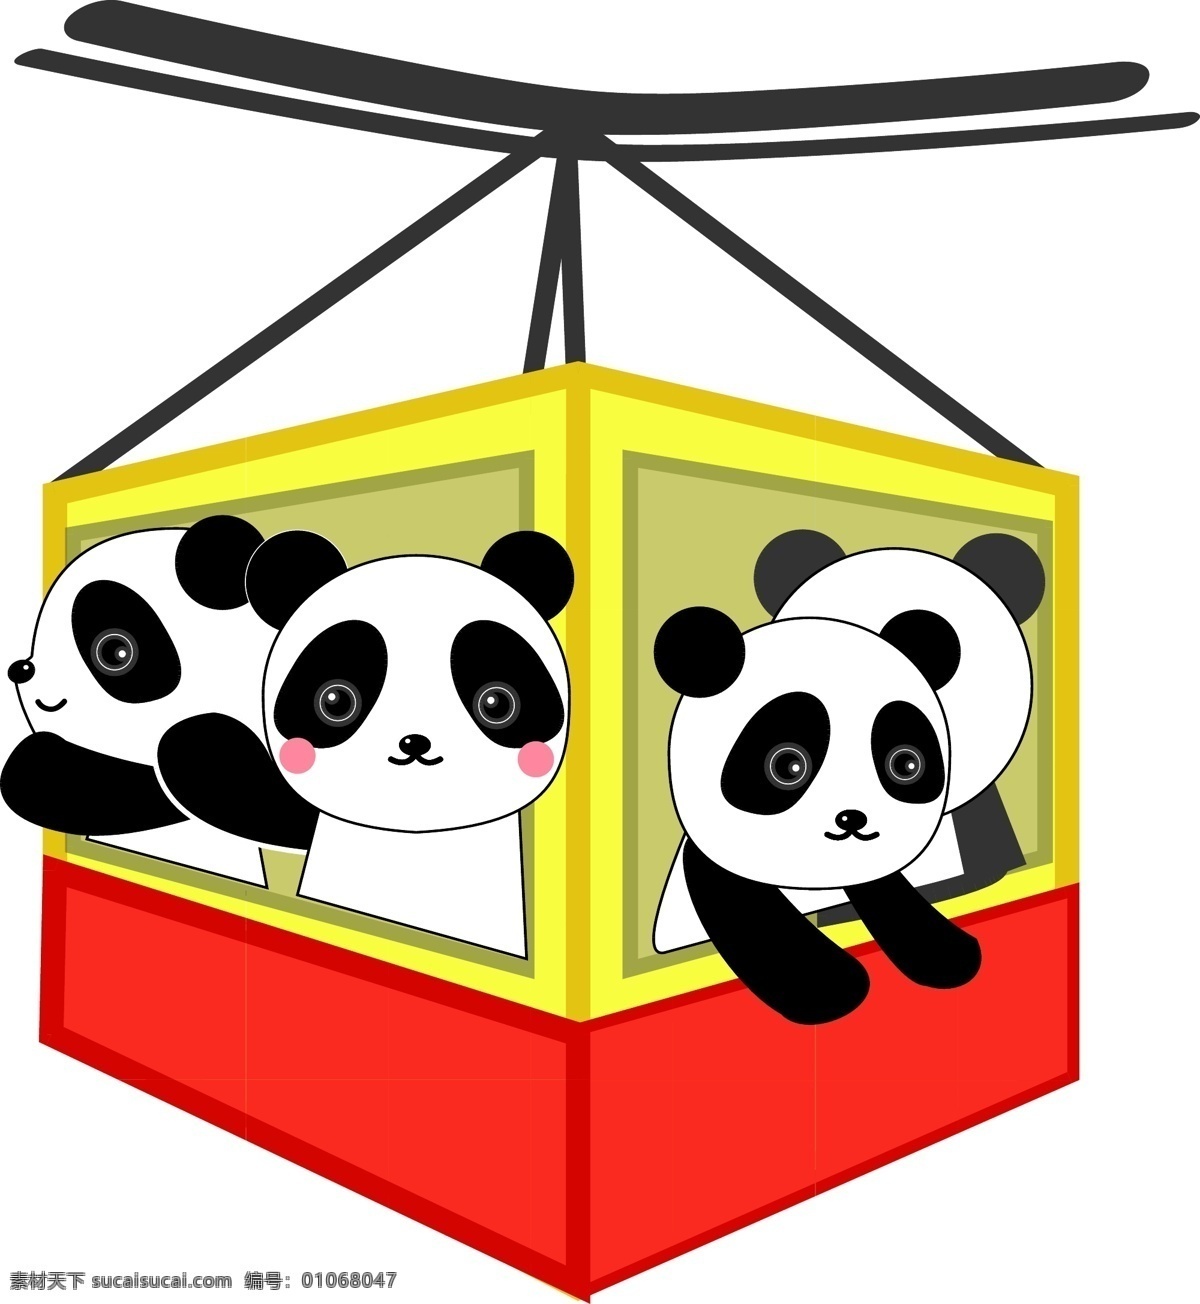 小熊猫 缆车 观光缆车 旅游 熊猫 国宝 可爱 美美的 萌萌的 装饰 图案 背景 红色 黄色 黑色 交通工具